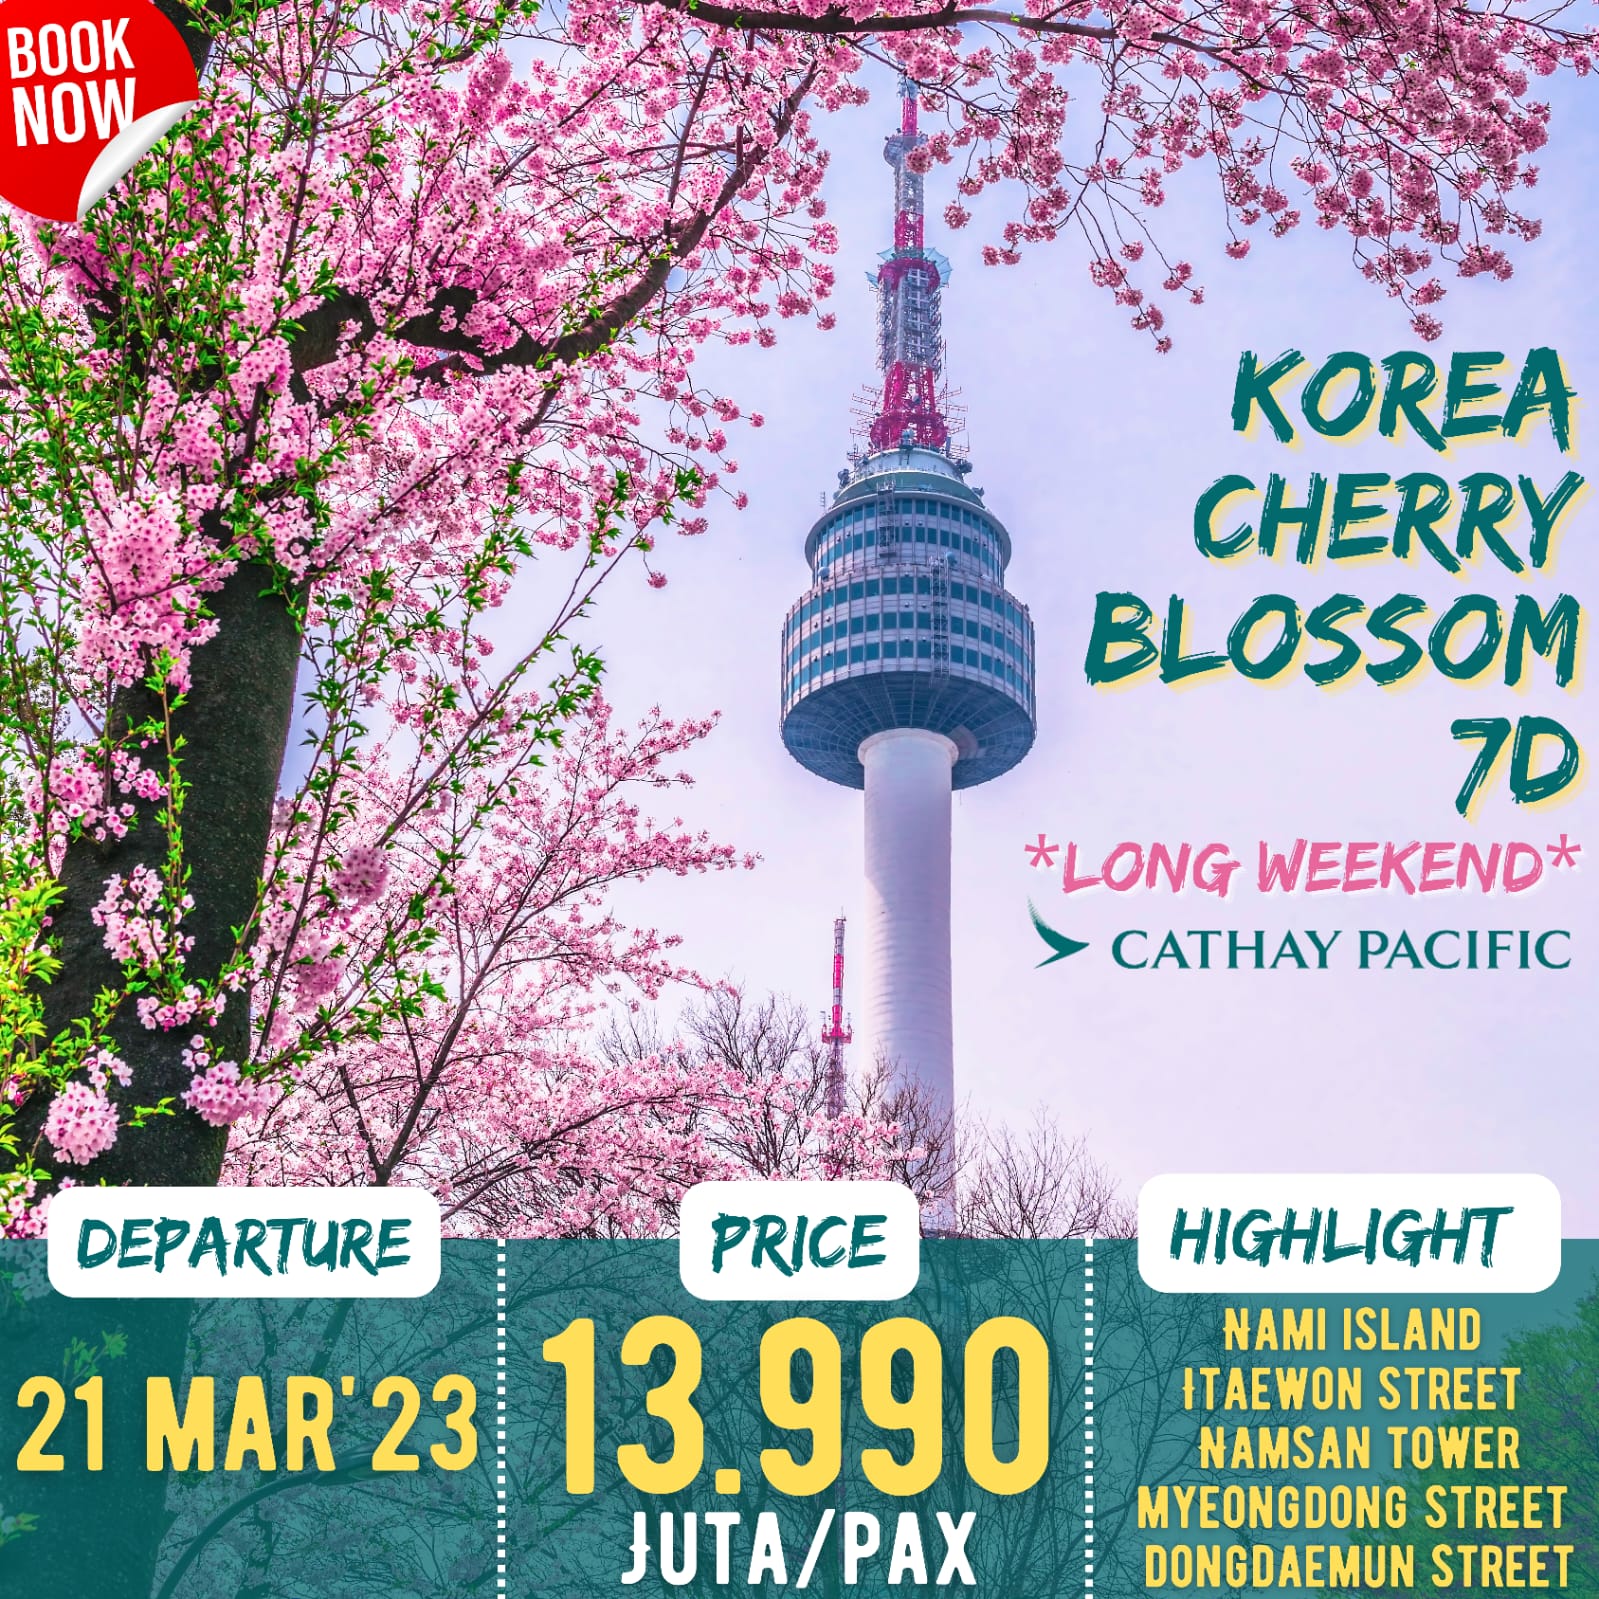 Korea Cherry Blossom + Nami Island